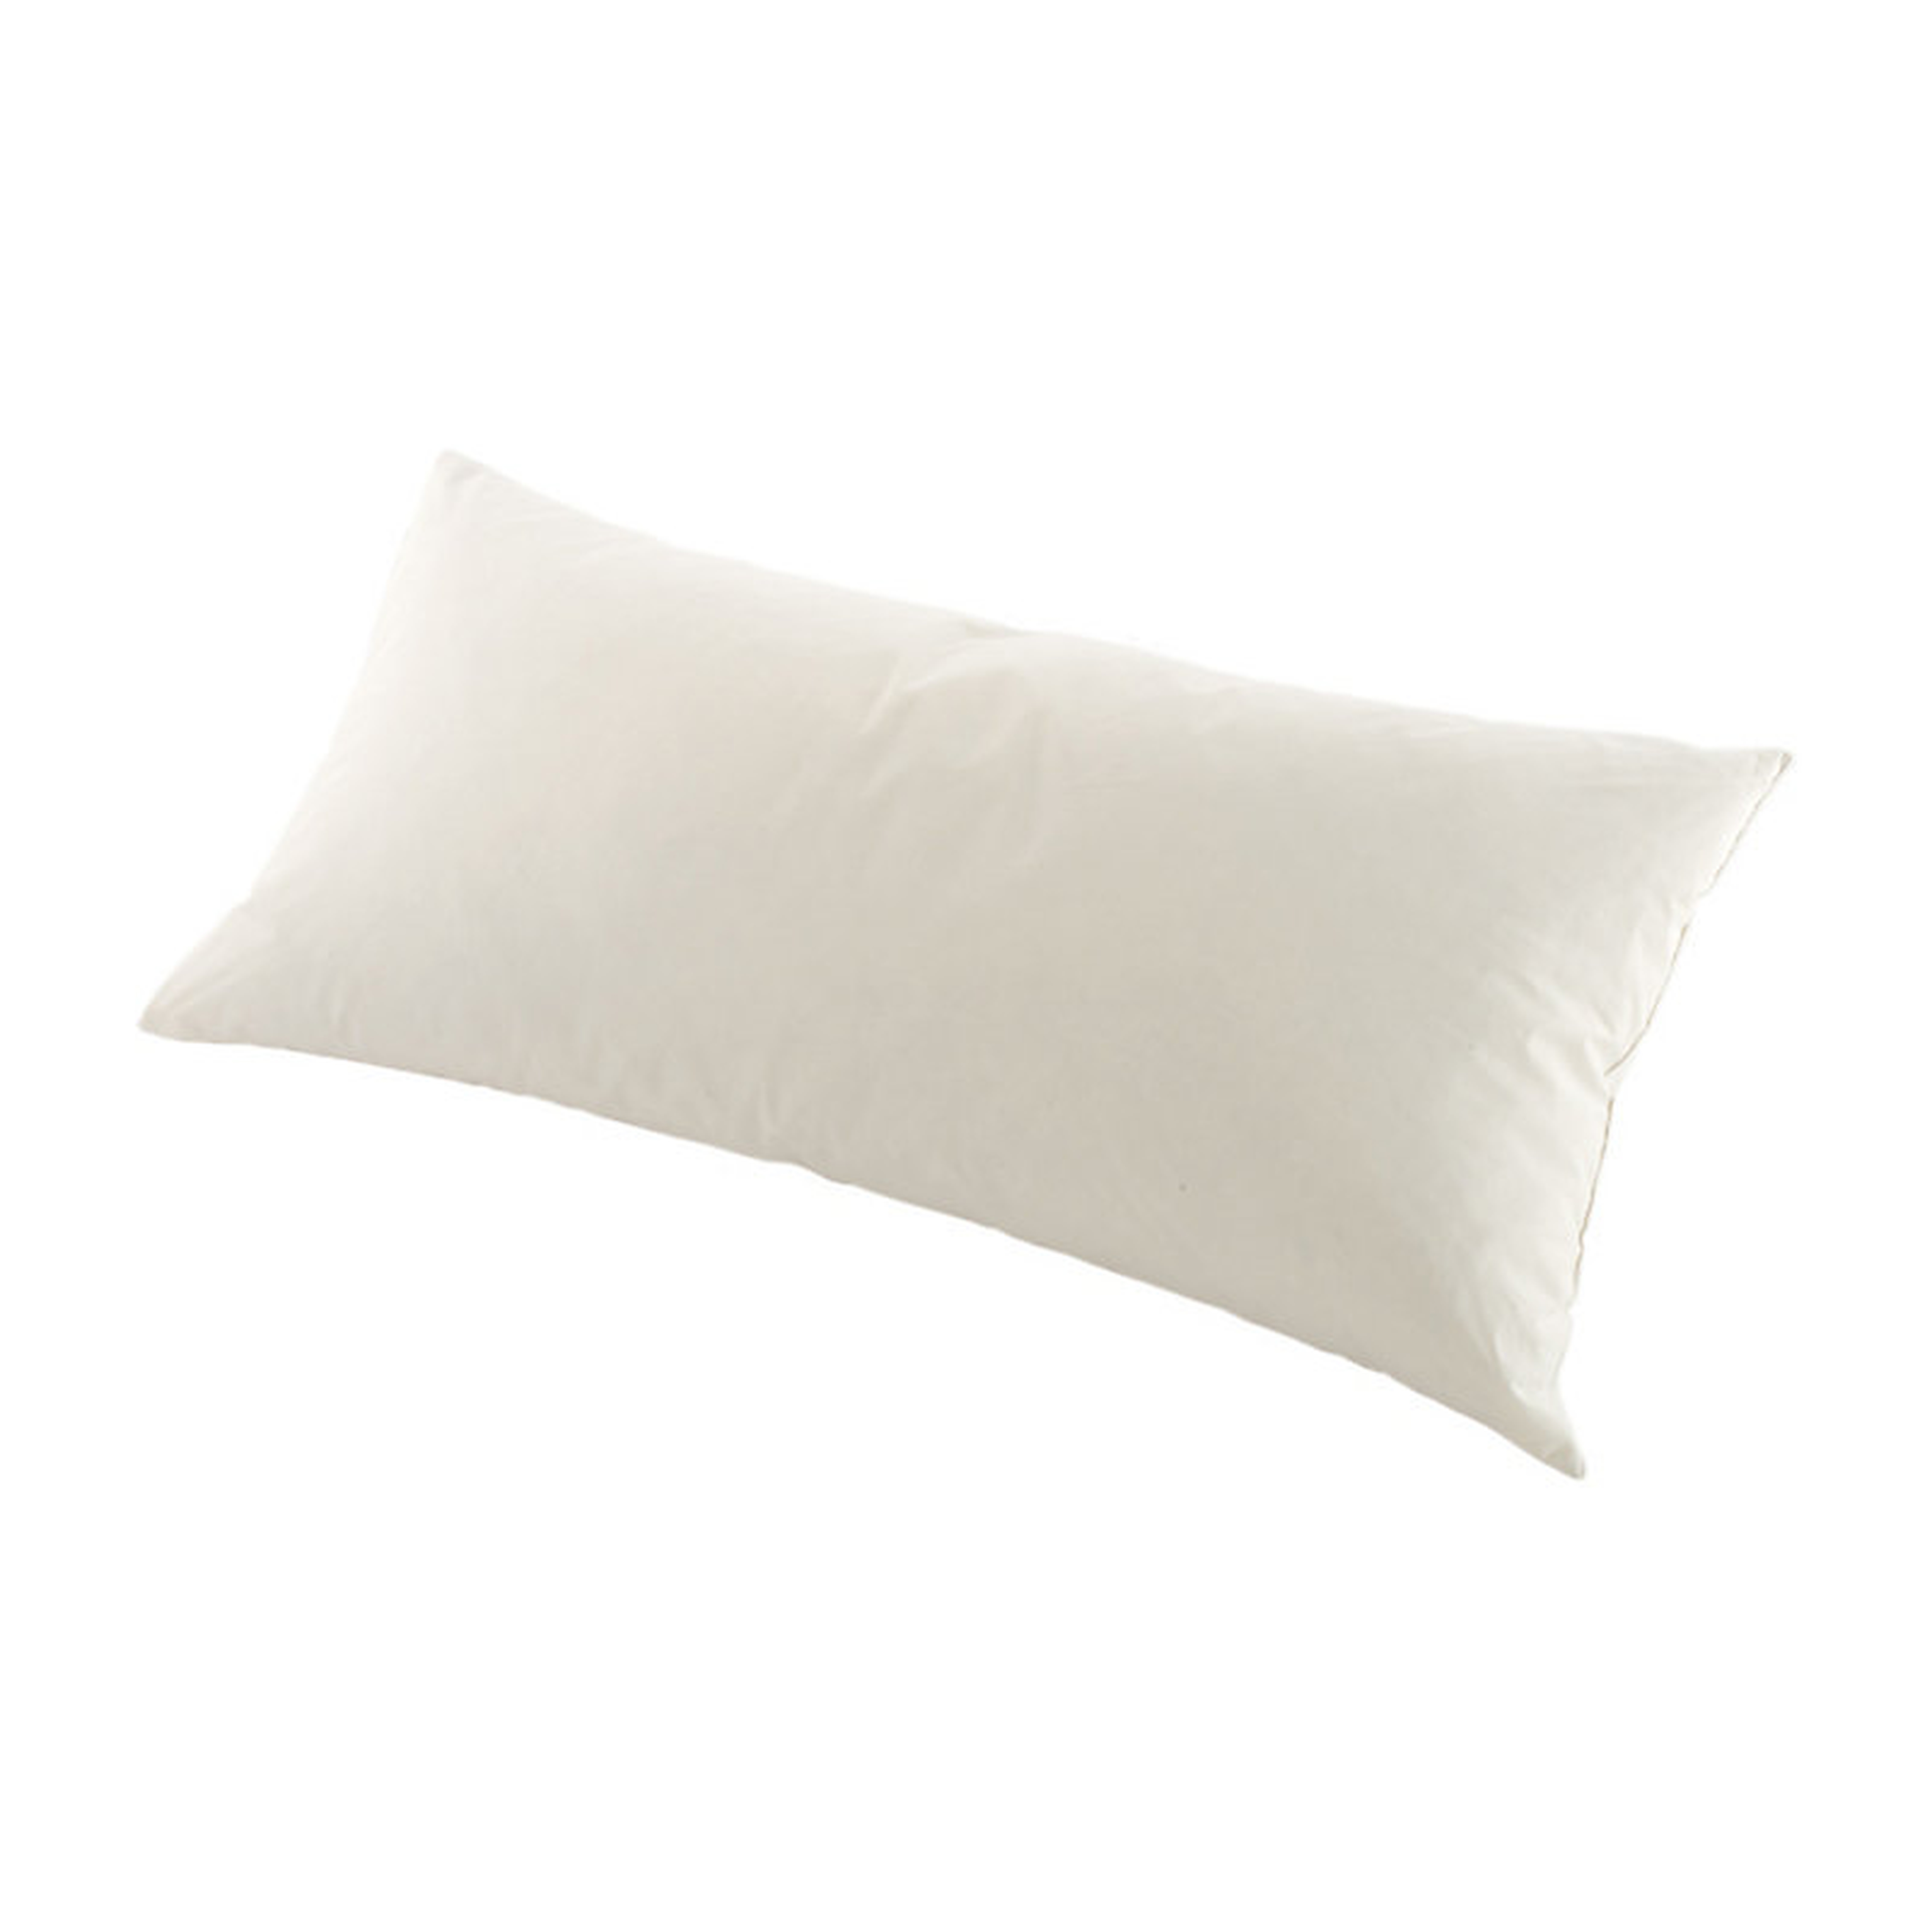 Ballard Designs Ballard Basic Pillow Insert - 12x20 - Ballard Designs